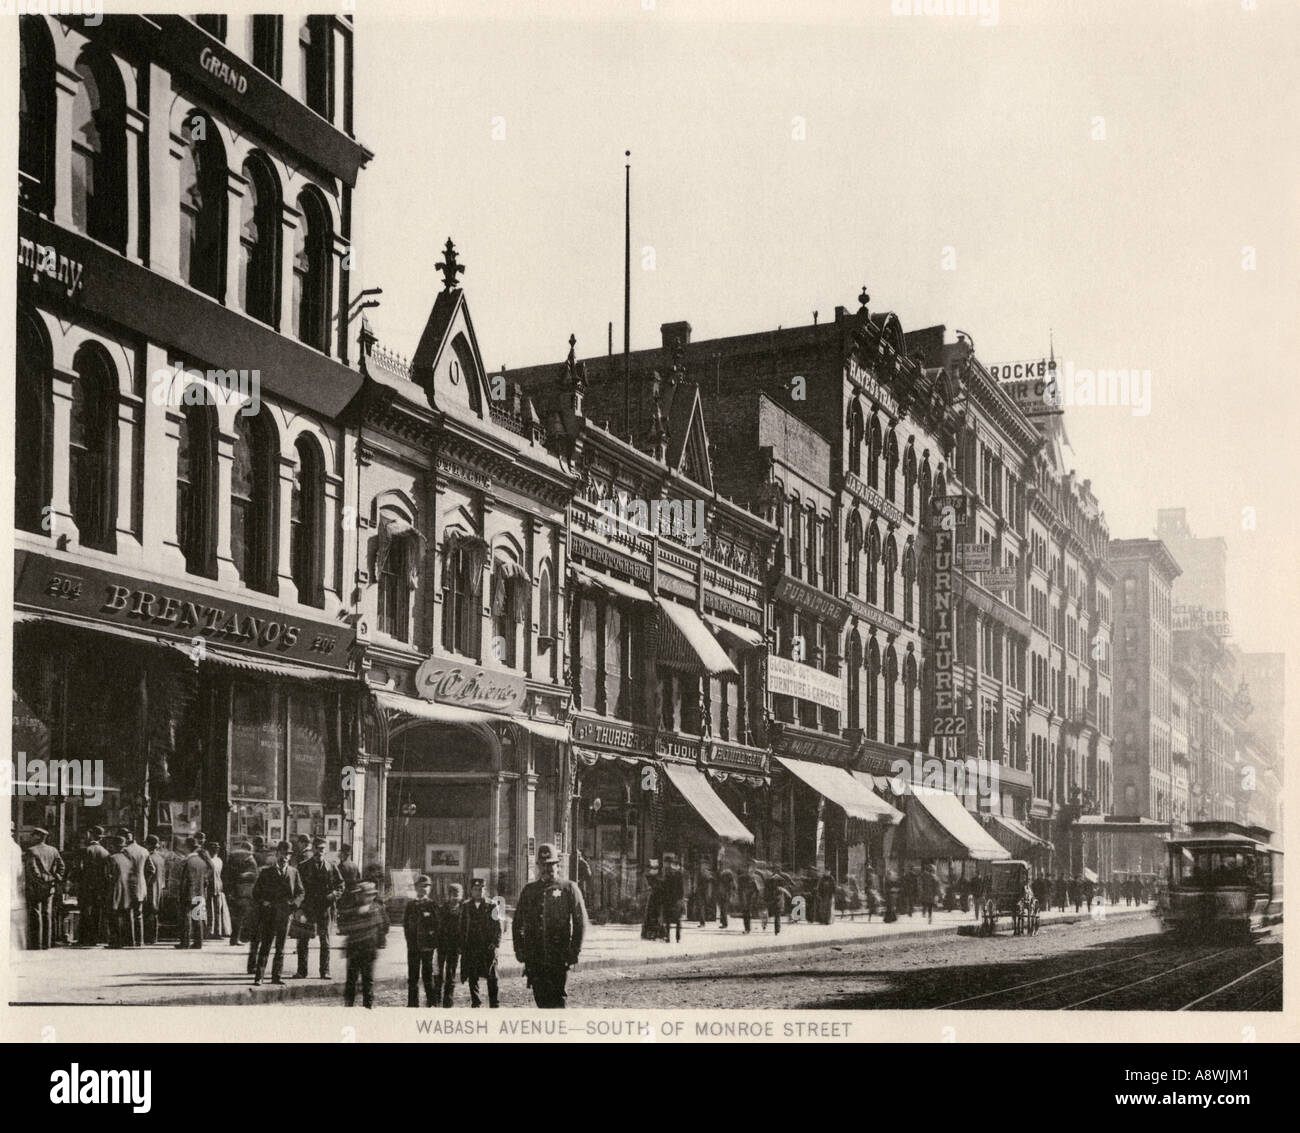 Librairie Bretanos et autres magasins sur Wabash Avenue au sud de Monroe Street, Chicago 1890. Photogravure Banque D'Images